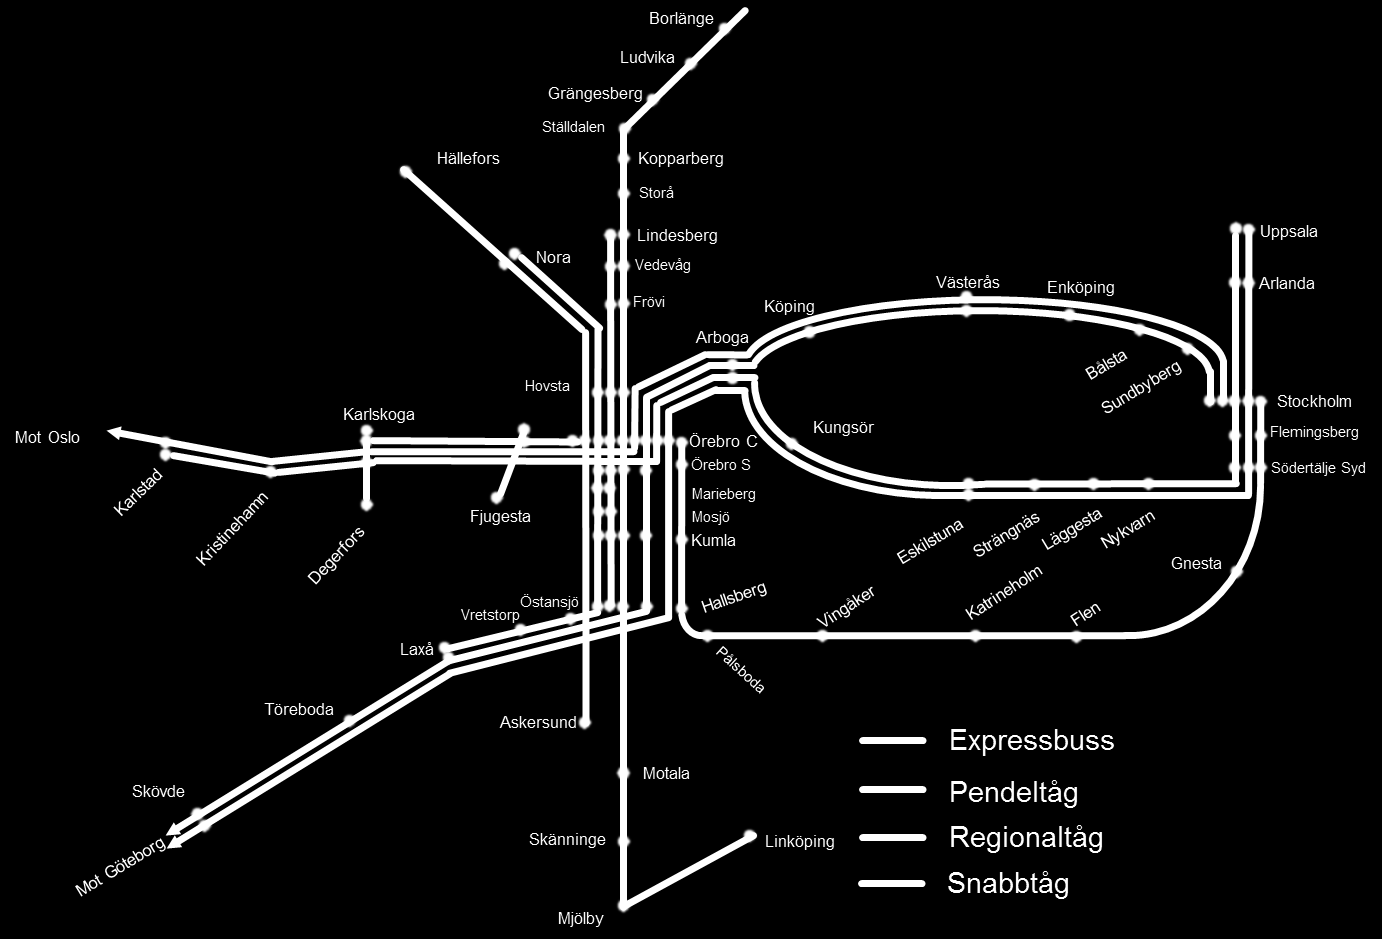 och expressbusstrafiken på längre sikt. En sådan vision är också ett viktigt underlag för att kunna planera för en samhällsstruktur där fler väljer kollektivtrafiken framför bilen.